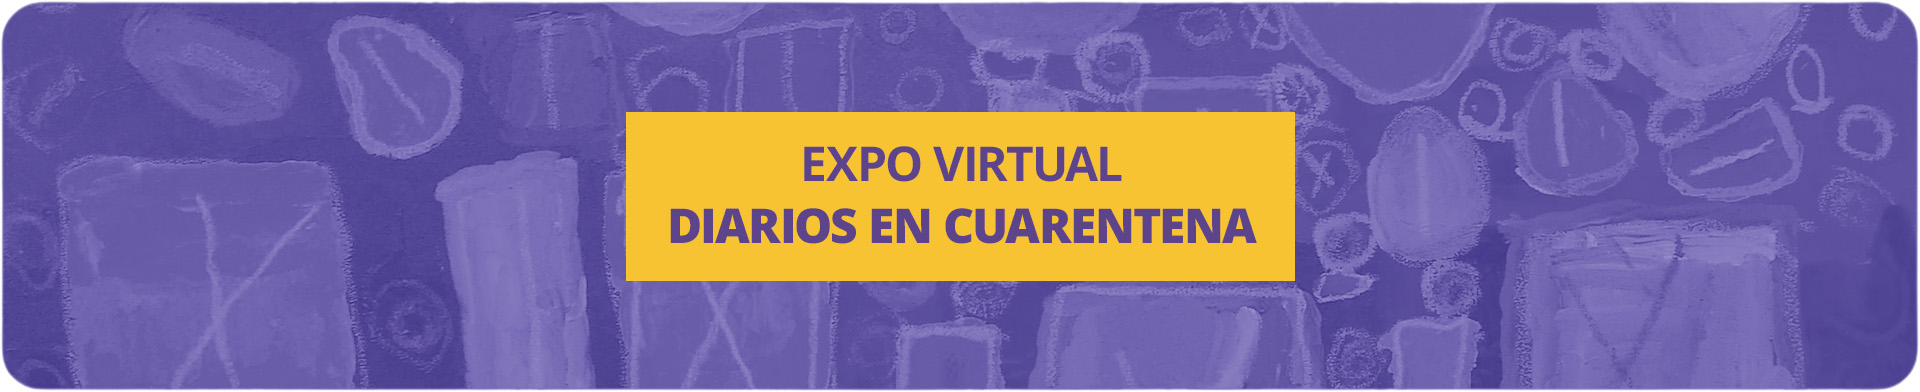 Expo Virtual: Diarios en cuarentena